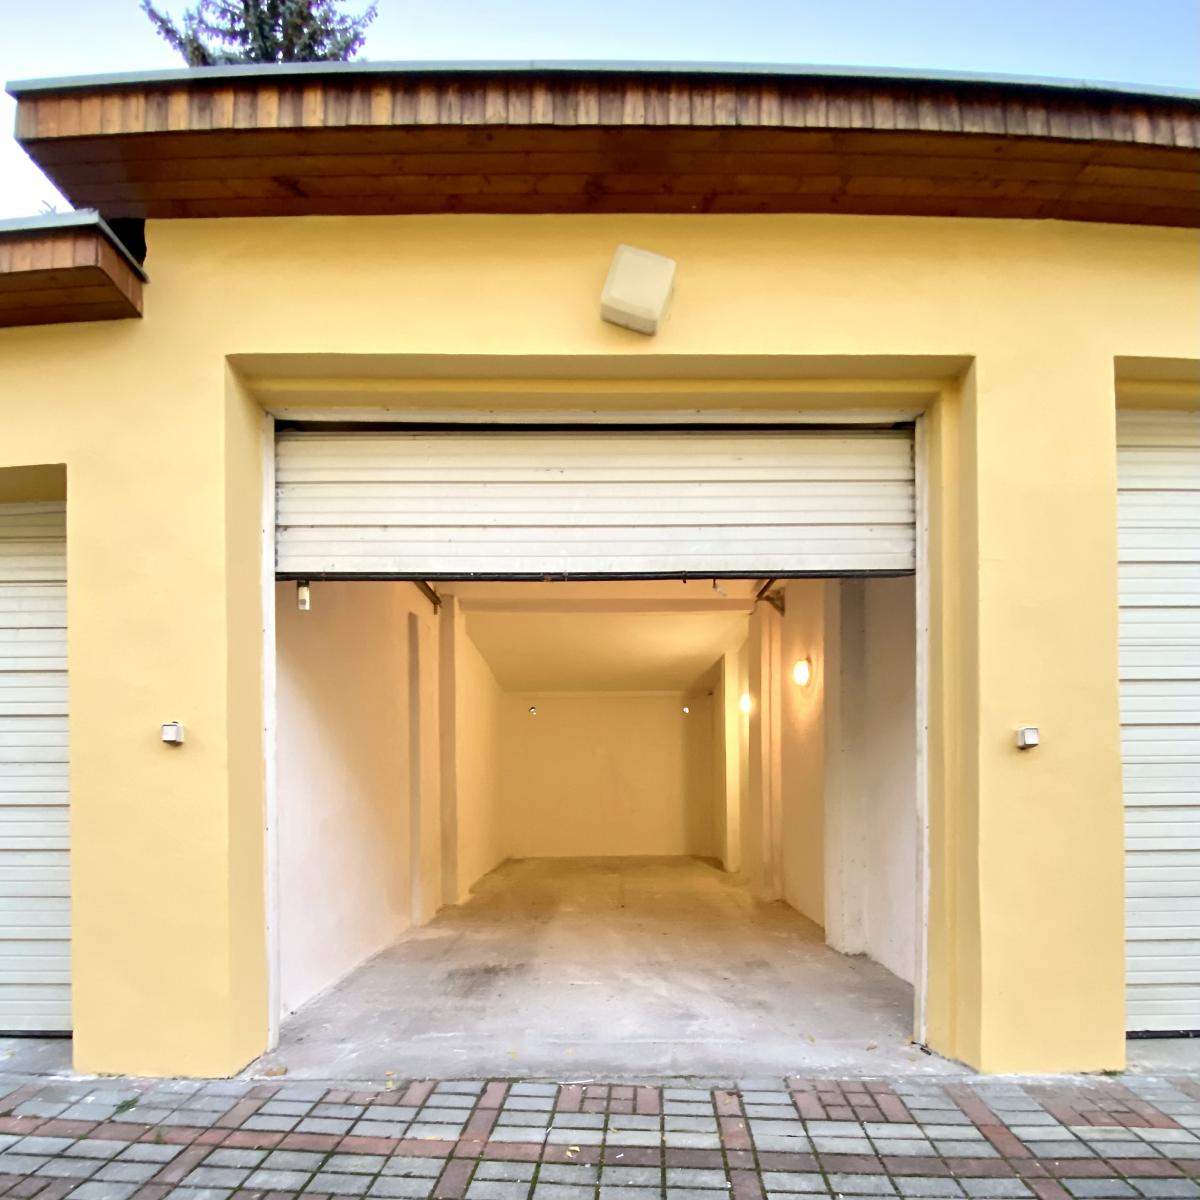 K pronájmu velká garáž 31m2 s elektřinou Česká Lípa Bulharská ulice, obrázek č. 1